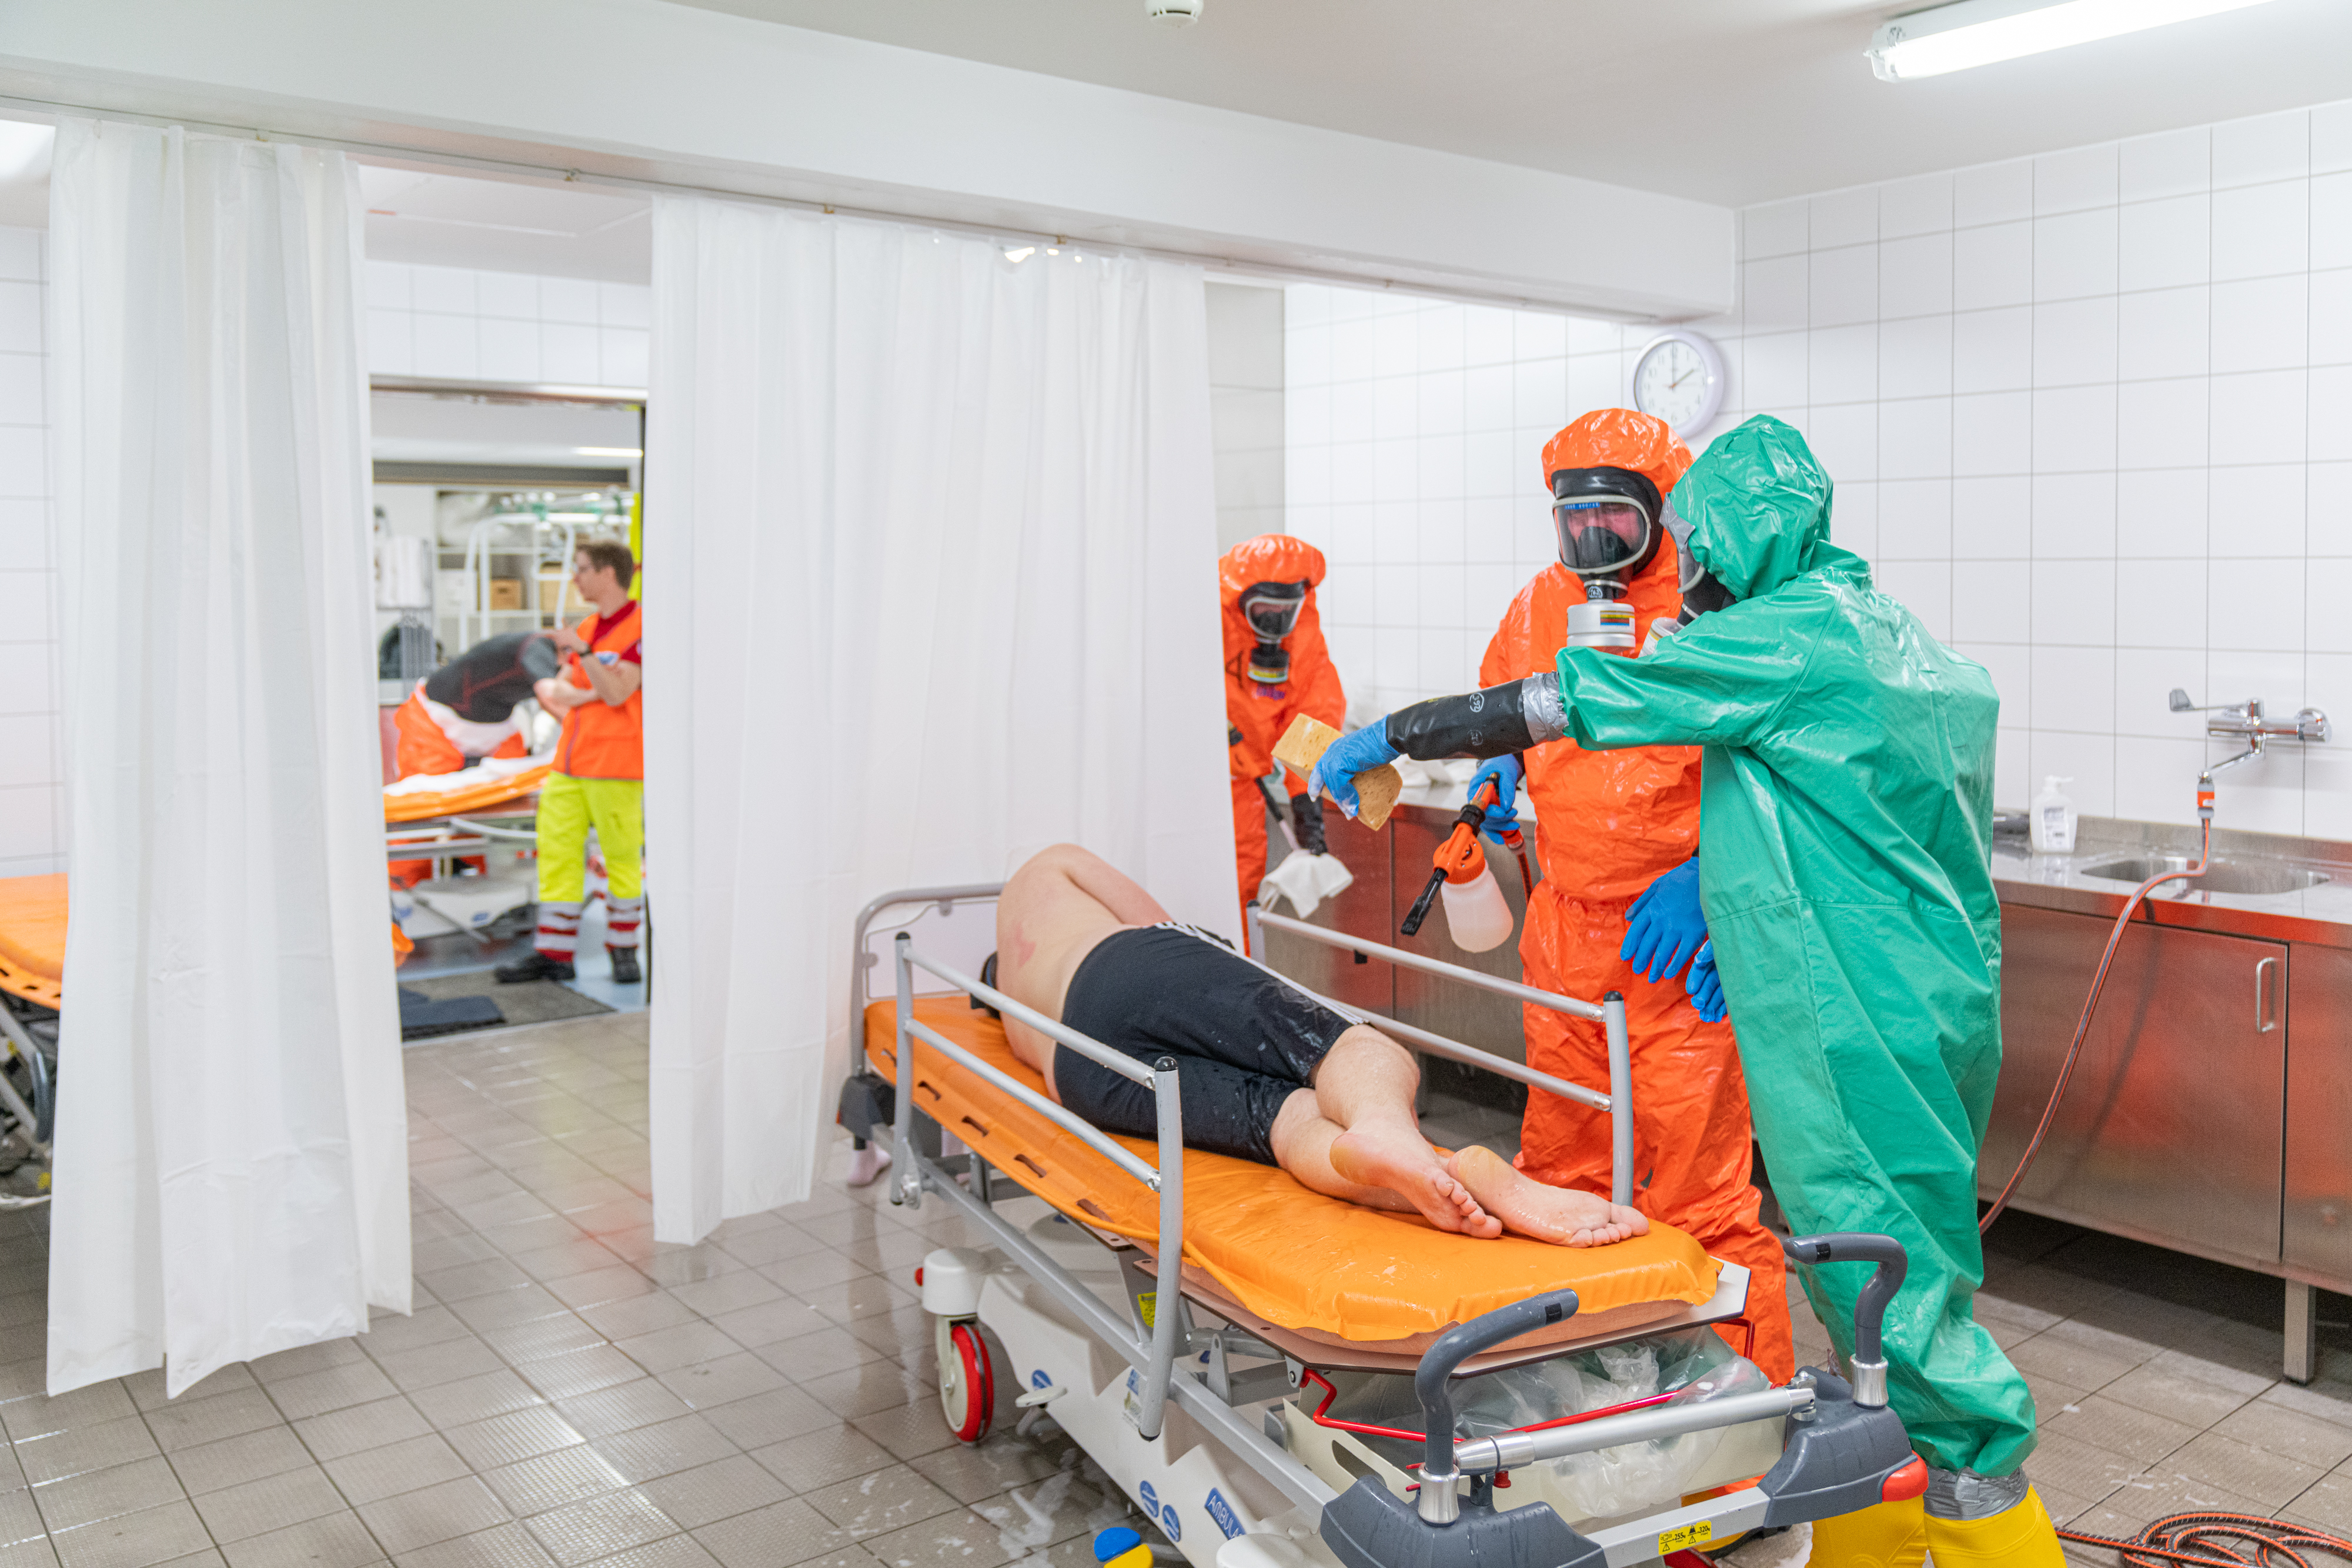 Ein Patient liegt im Zuge des Katastrophenschutzes in einem Zelt, Mitarbeiter:innen in Schutzanzügen umsorgen ihn.